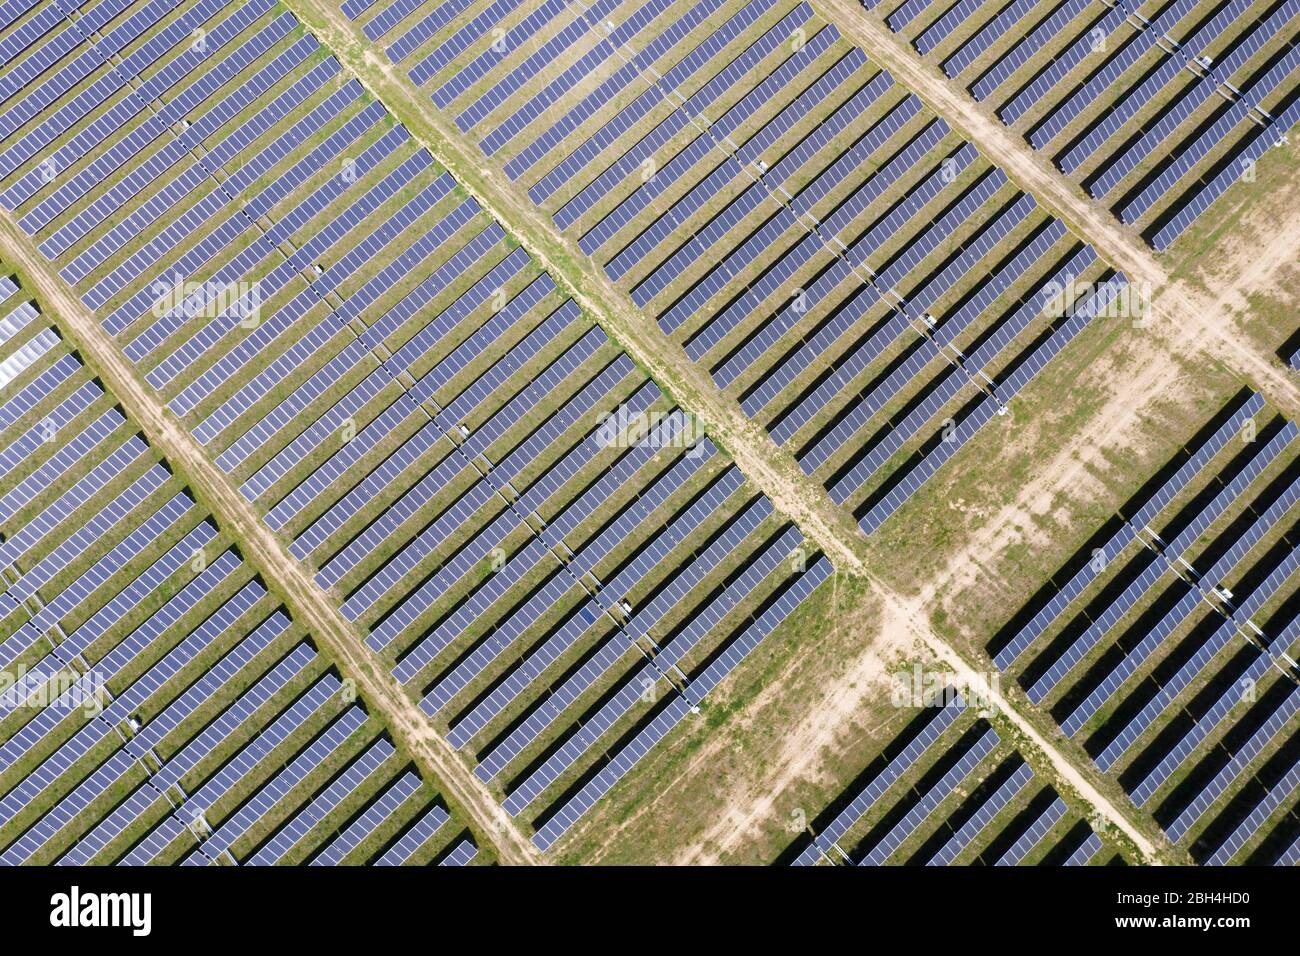 Abstrakte Luftaufnahme eines Feldes von PV-Solarzellen in einer ordentlichen Reihe auf der Carrizo Plain von Kalifornien Stockfoto